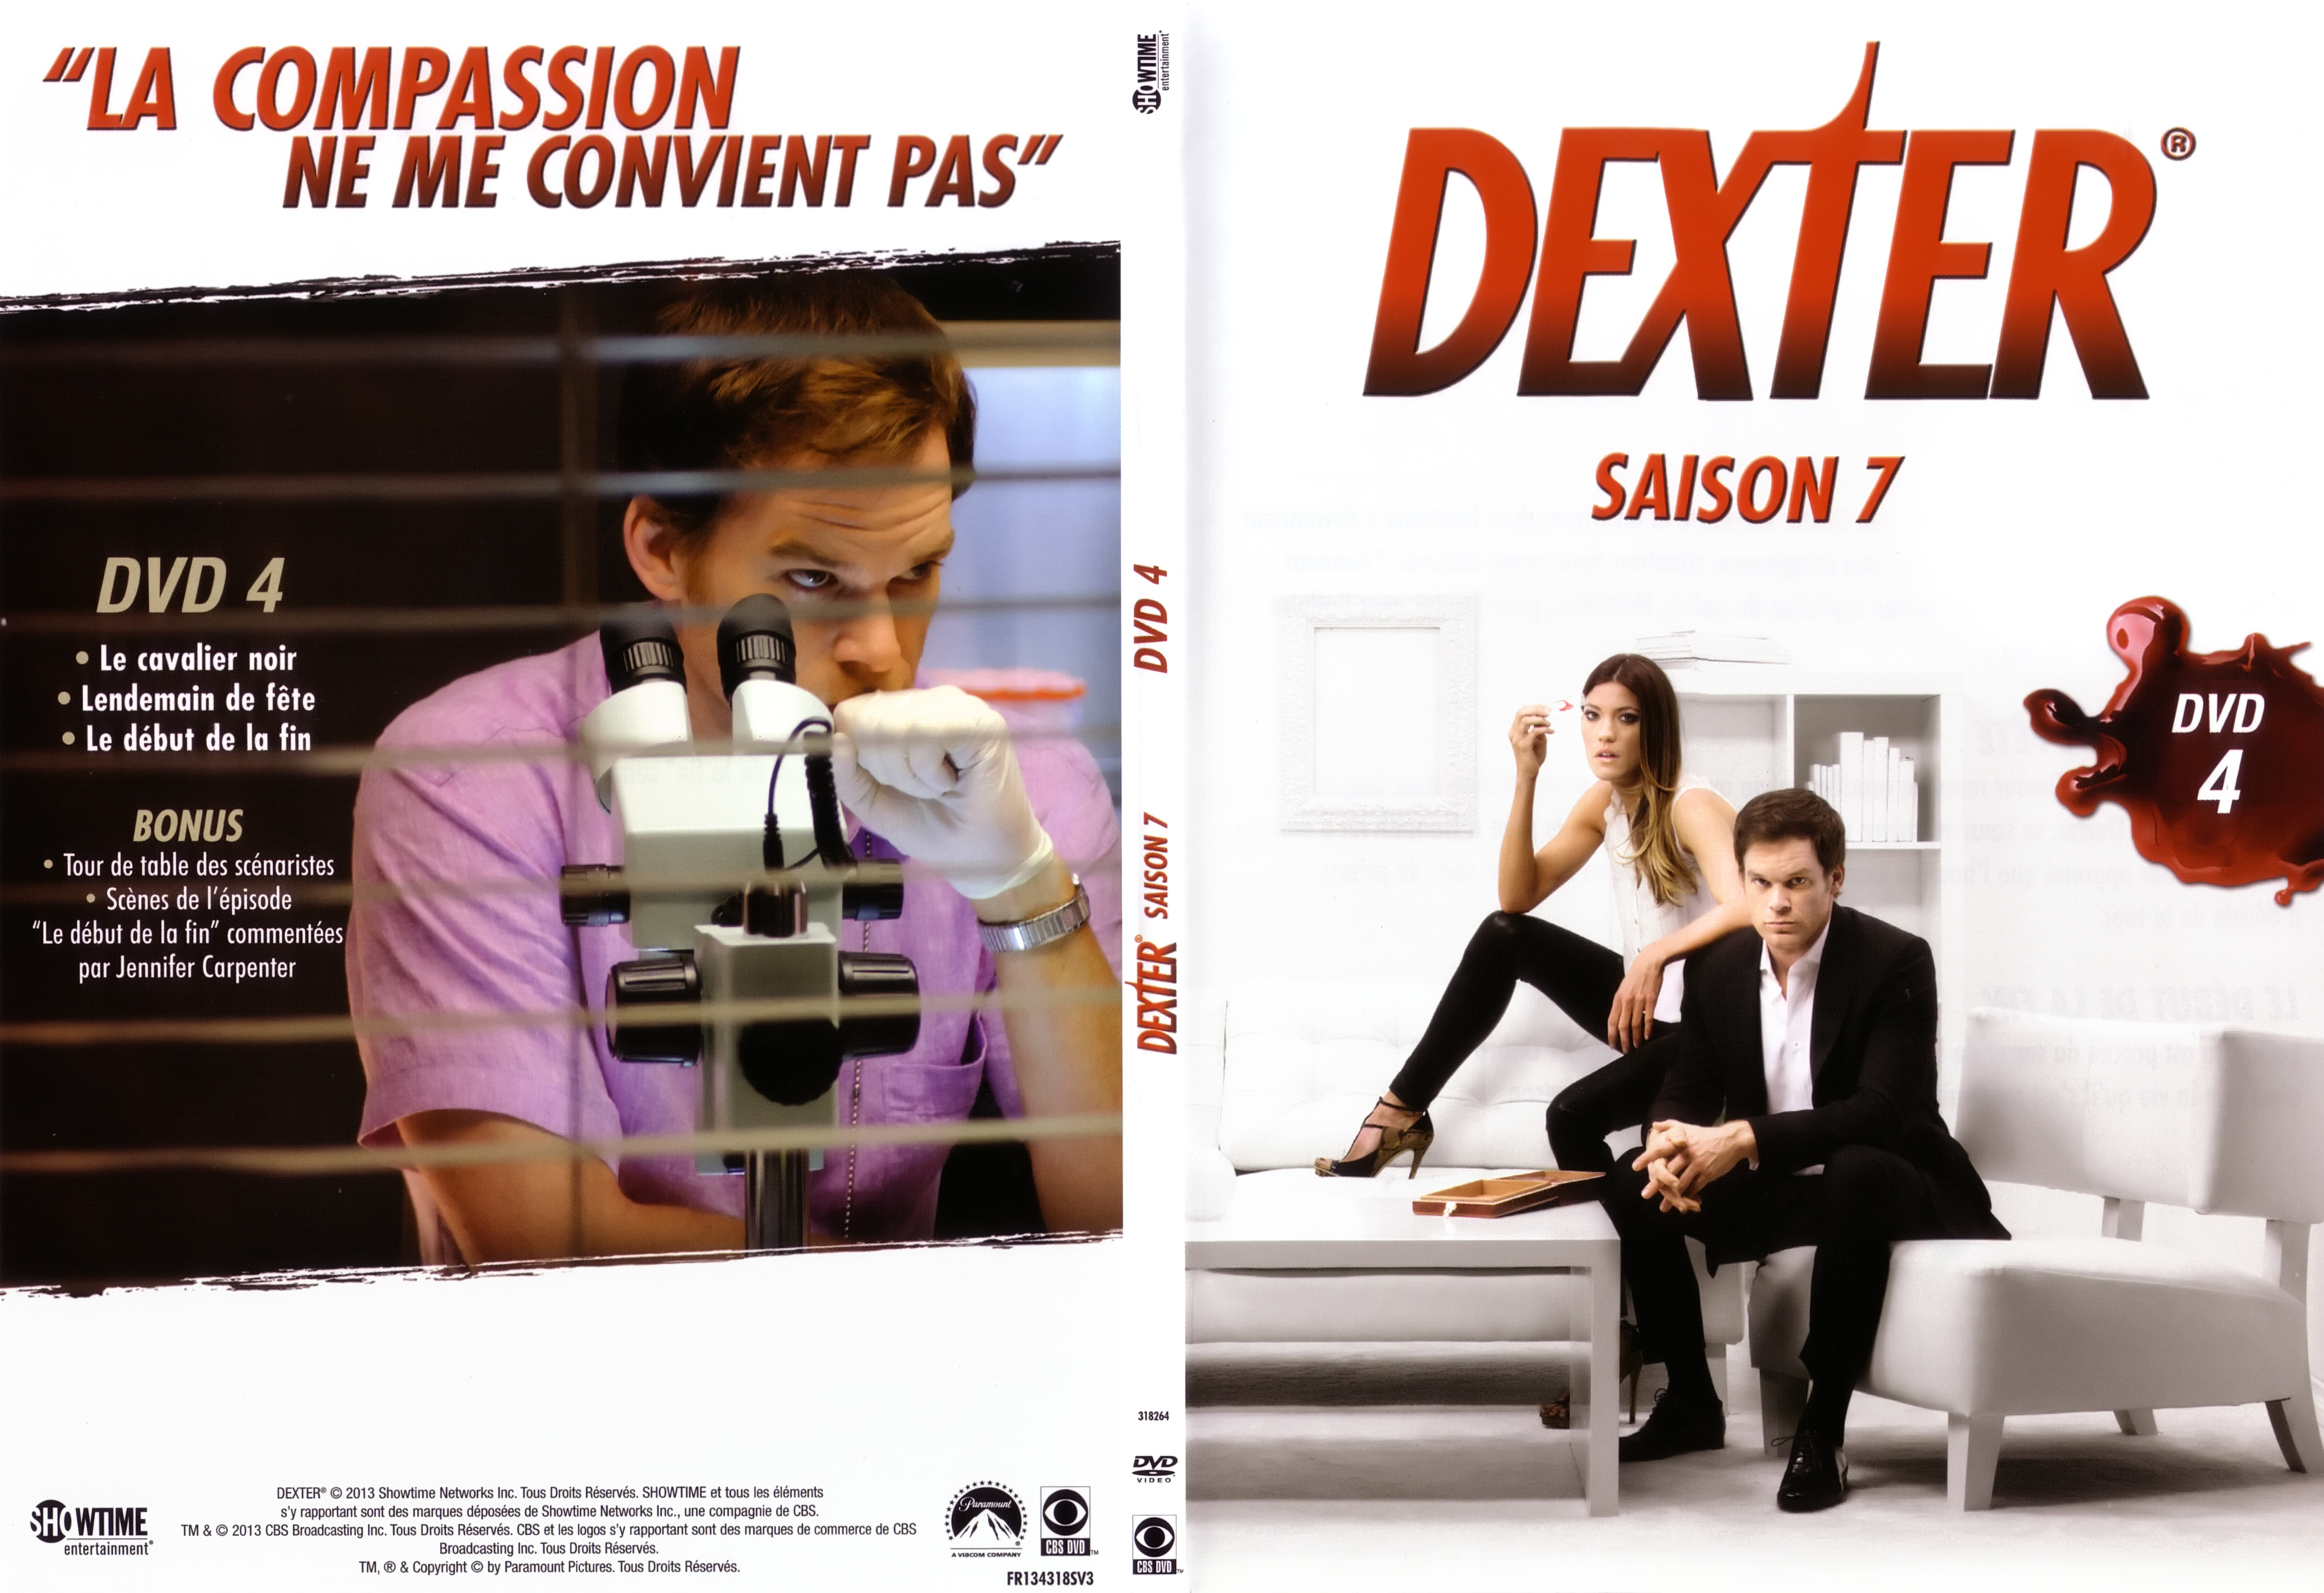 Jaquette DVD Dexter saison 7 DVD 3